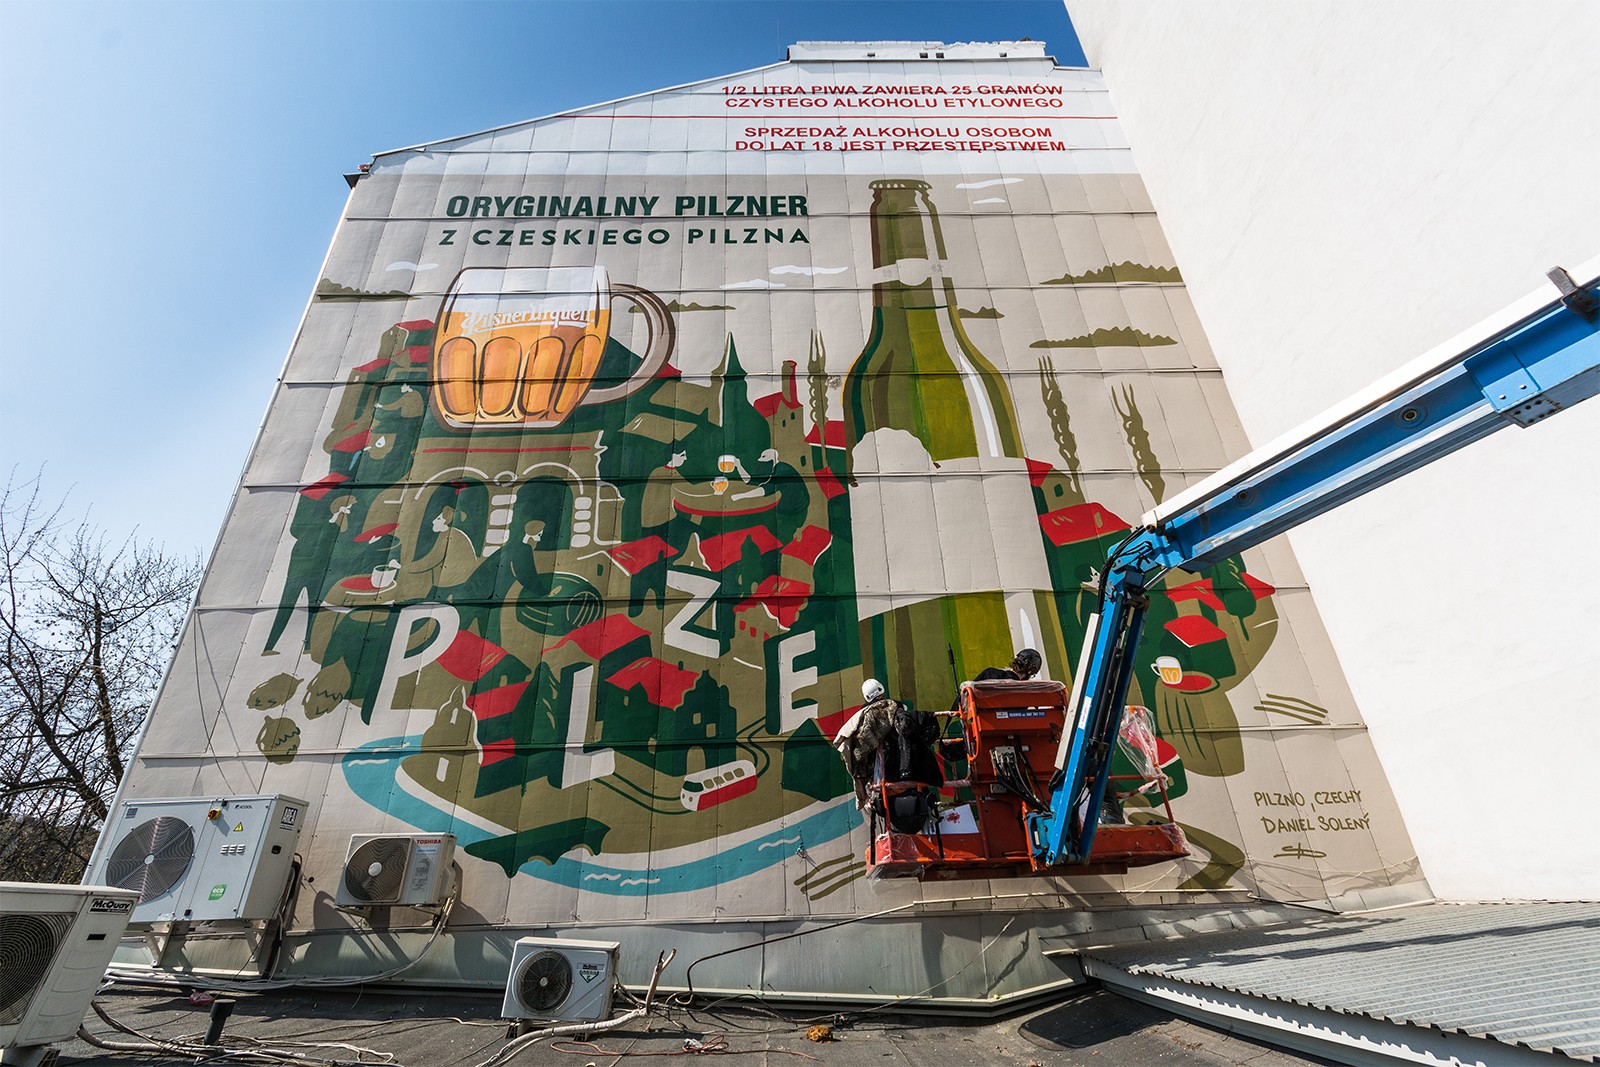 Mural reklamujący kampanię Oryginalny pilzner z czeskiego Pilzna | Original pilsner from Czech Pilsen | Portfolio